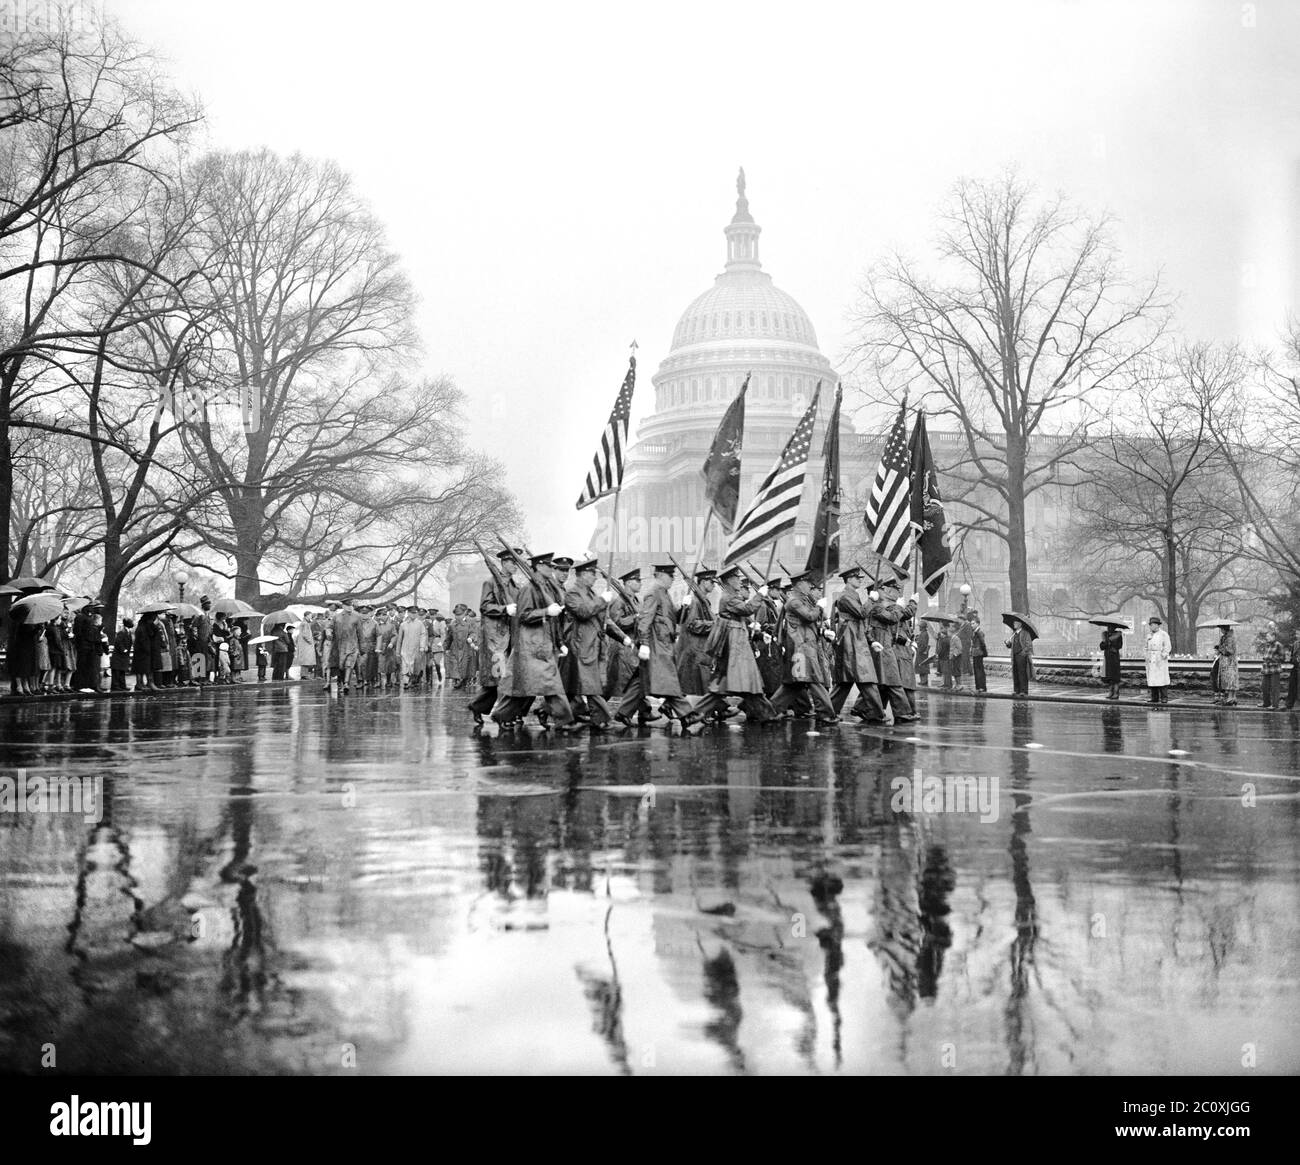 Desfile del día del Ejército pasando el edificio del Capitolio de los Estados Unidos en lluvia el 22 aniversario de la entrada de los Estados Unidos a la primera Guerra Mundial, Washington, D.C., EE.UU., Harris y Ewing, 6 de abril de 1939 Foto de stock